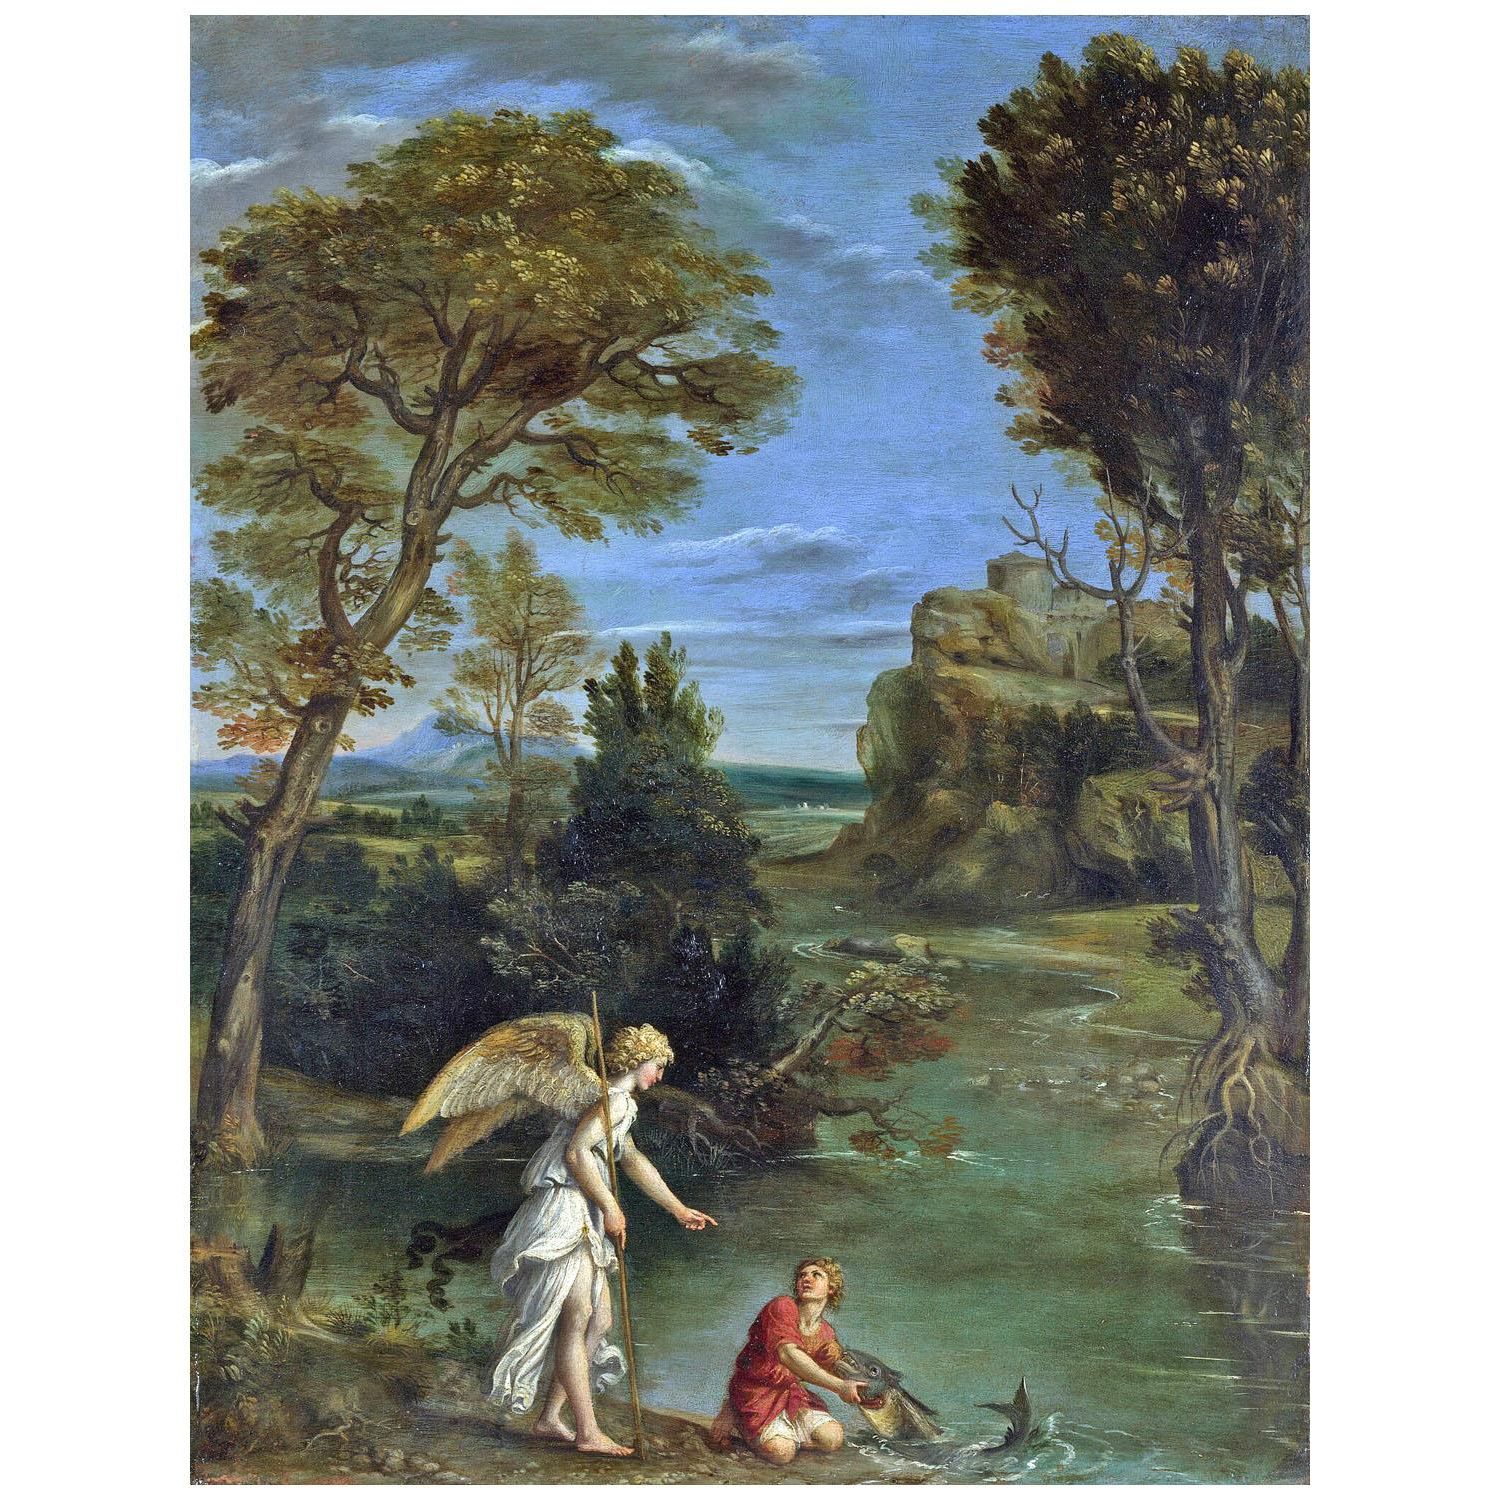 Domenichino. Paesaggio con Tobias. 1610. National Gallery London